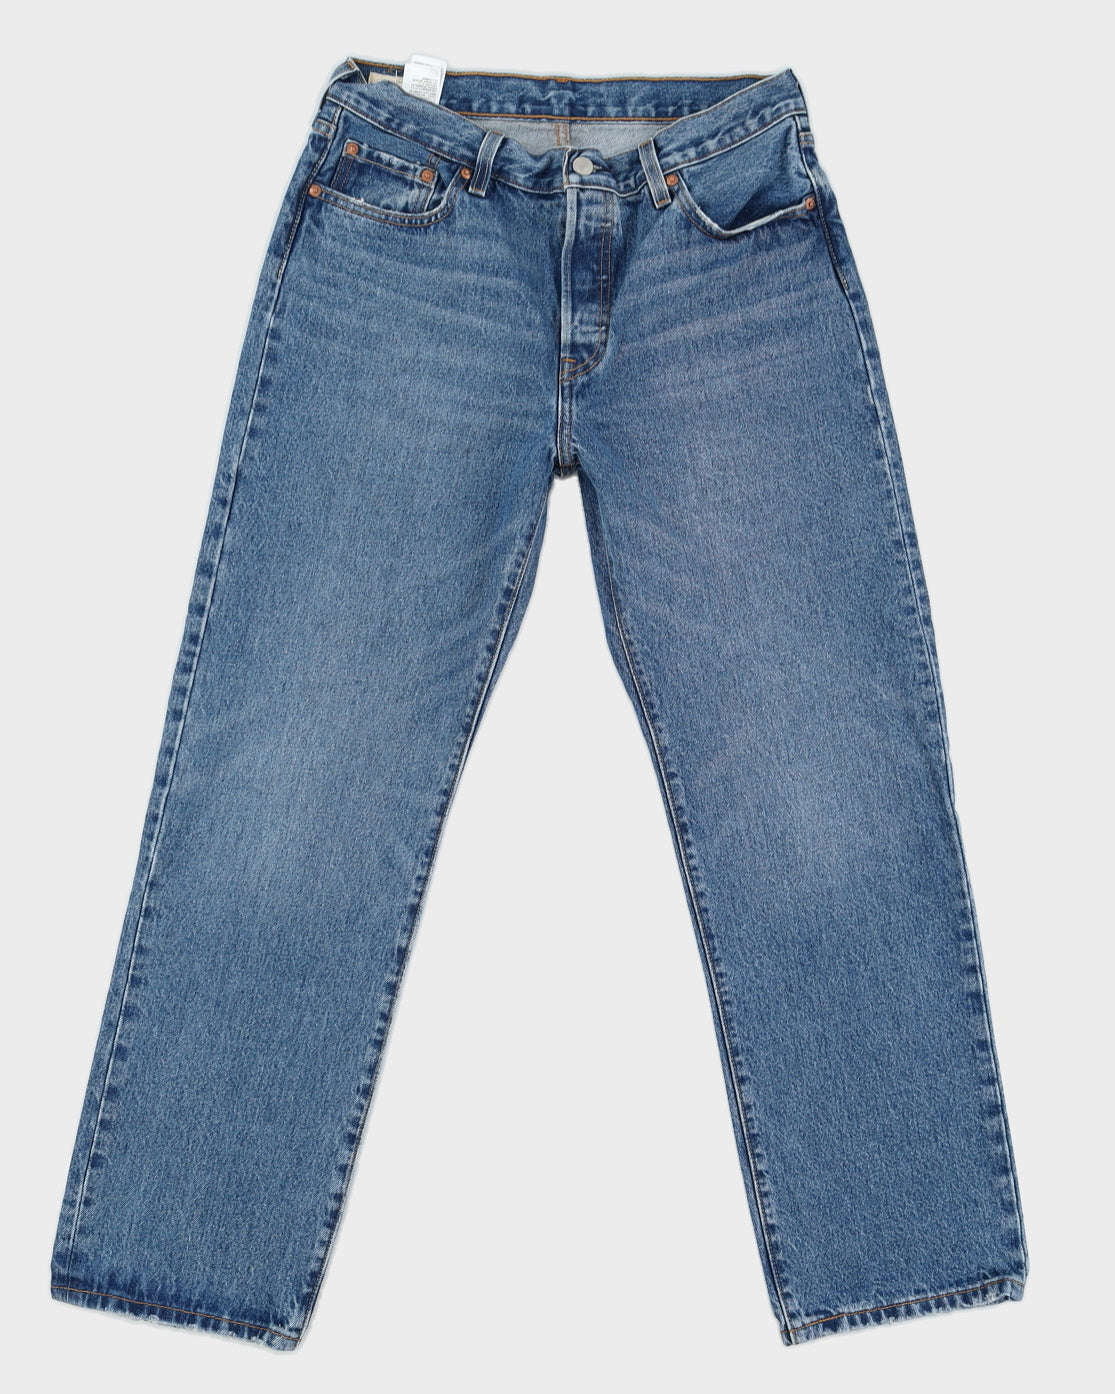 Levi's Medium Wash 501 Jeans - W29 L30